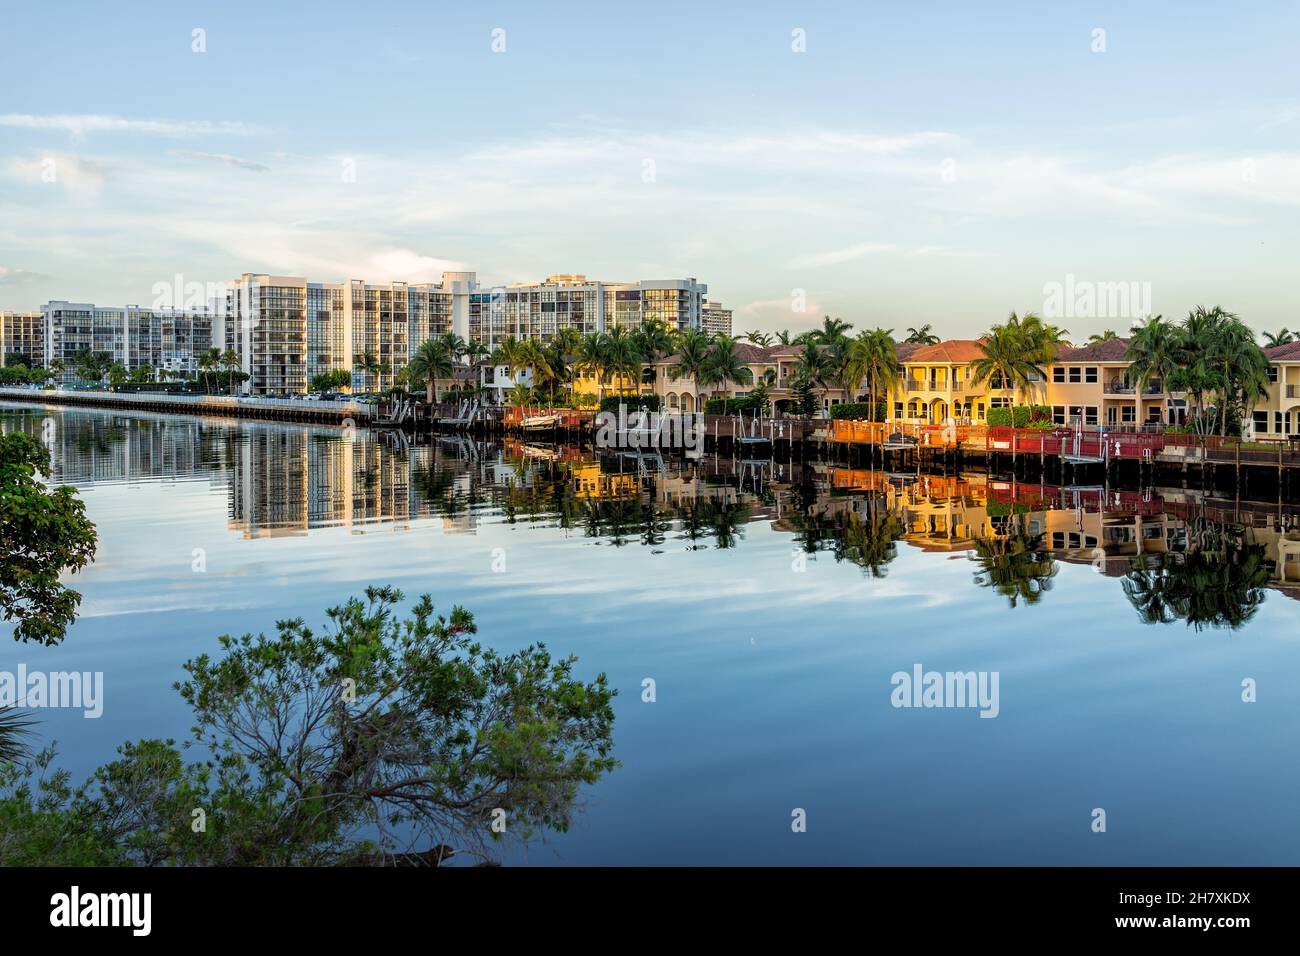 Hollywood Beach à Miami, Floride avec canal d'eau Intracoastal rivière Stranahan et vue sur le front de mer propriété moderne maisons de villas avec pal Banque D'Images